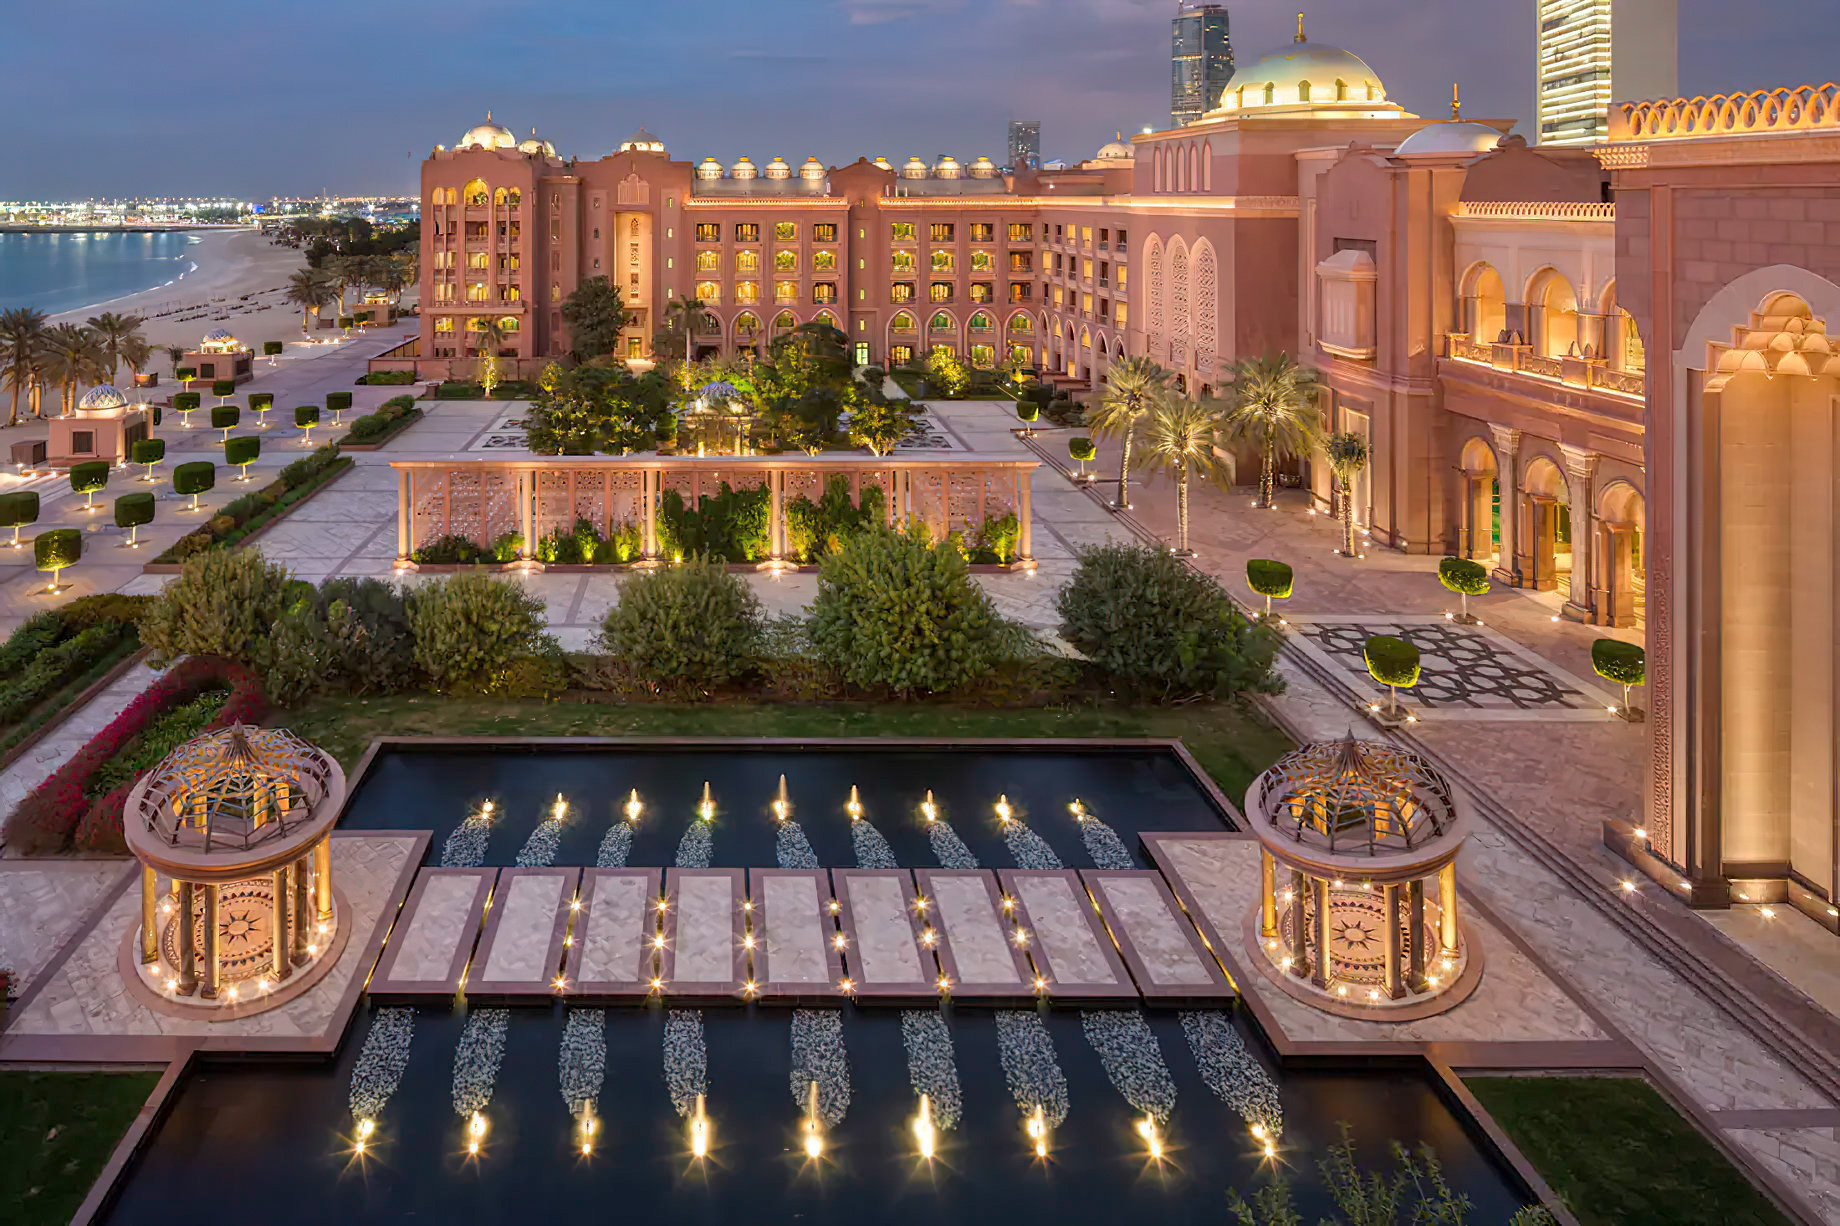 Emirates Palace Abu Dhabi Hotel – Abu Dhabi, UAE – Ballroom Terrace Palace View